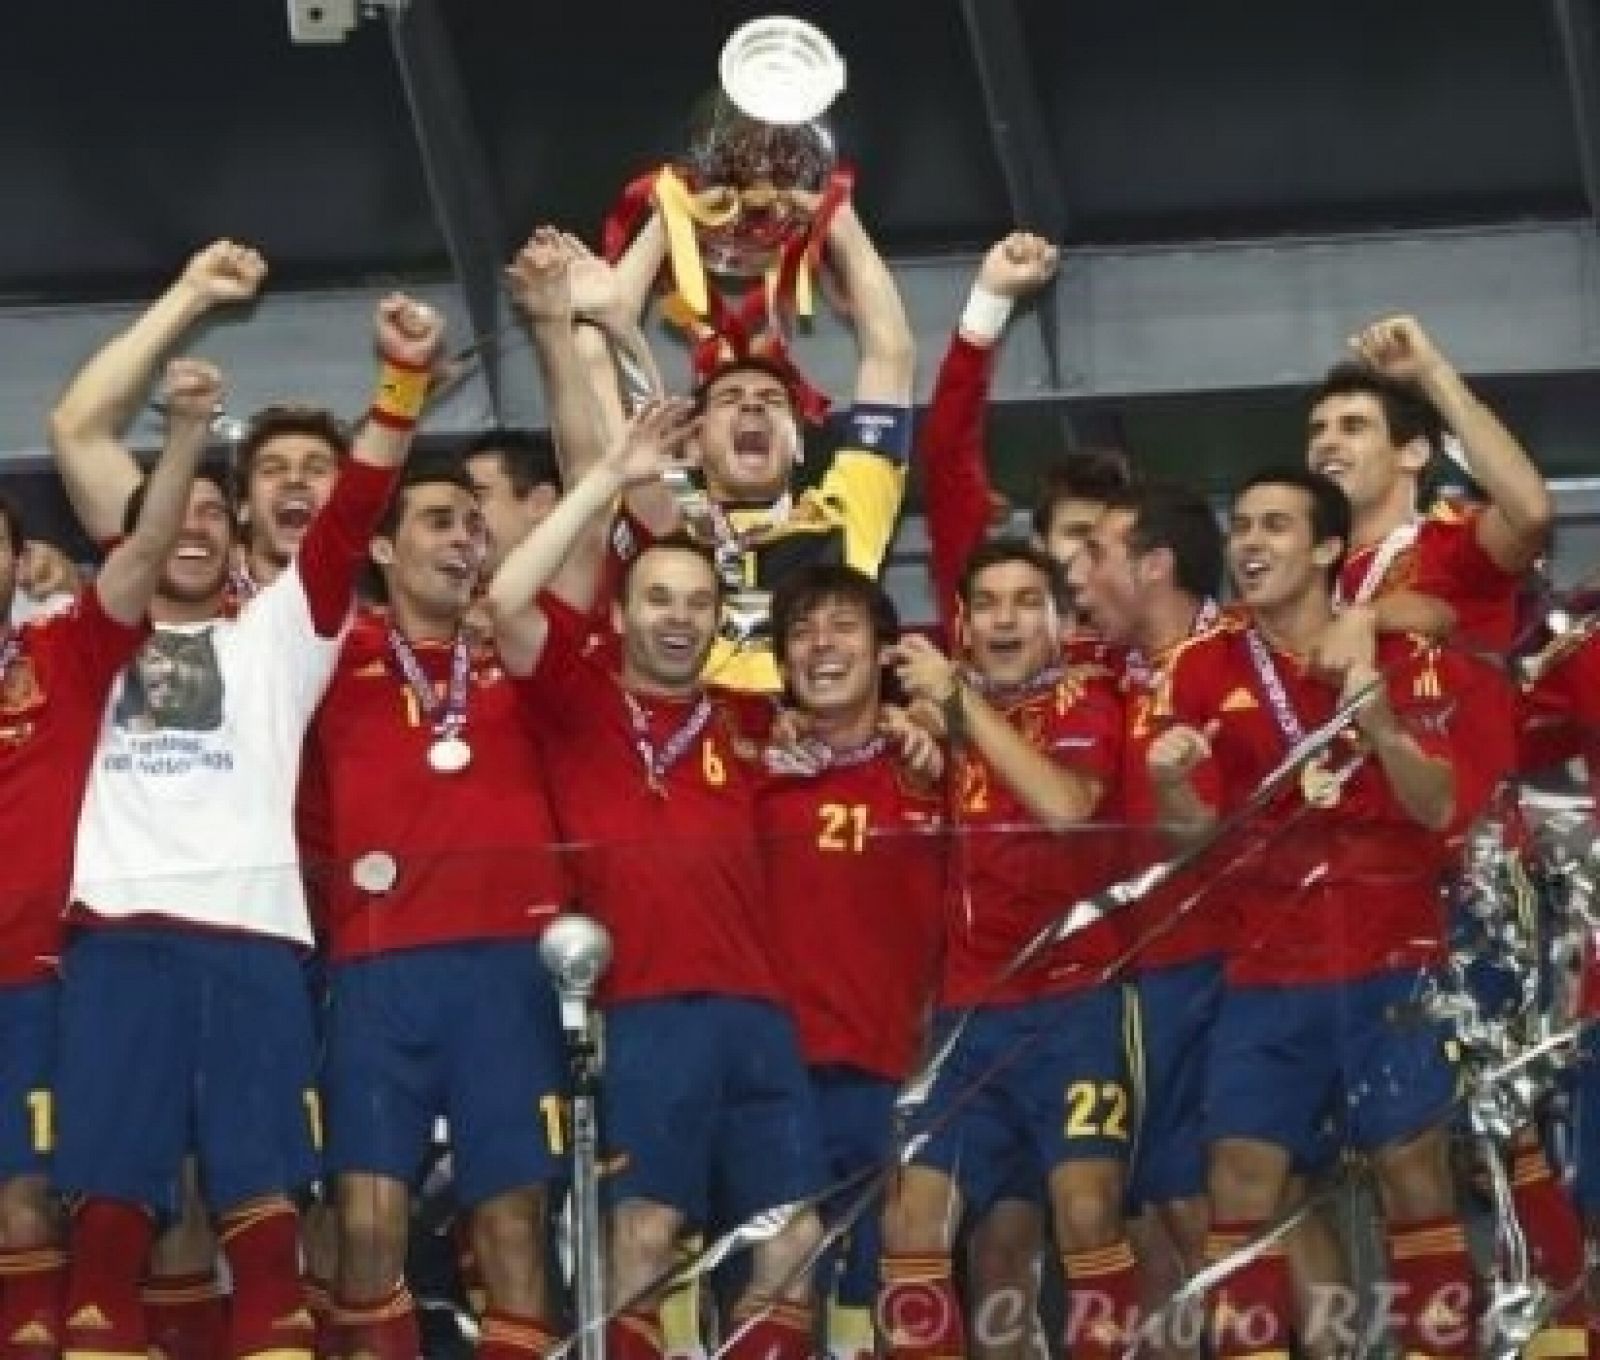 España, campeona de la Eurocopa 2012